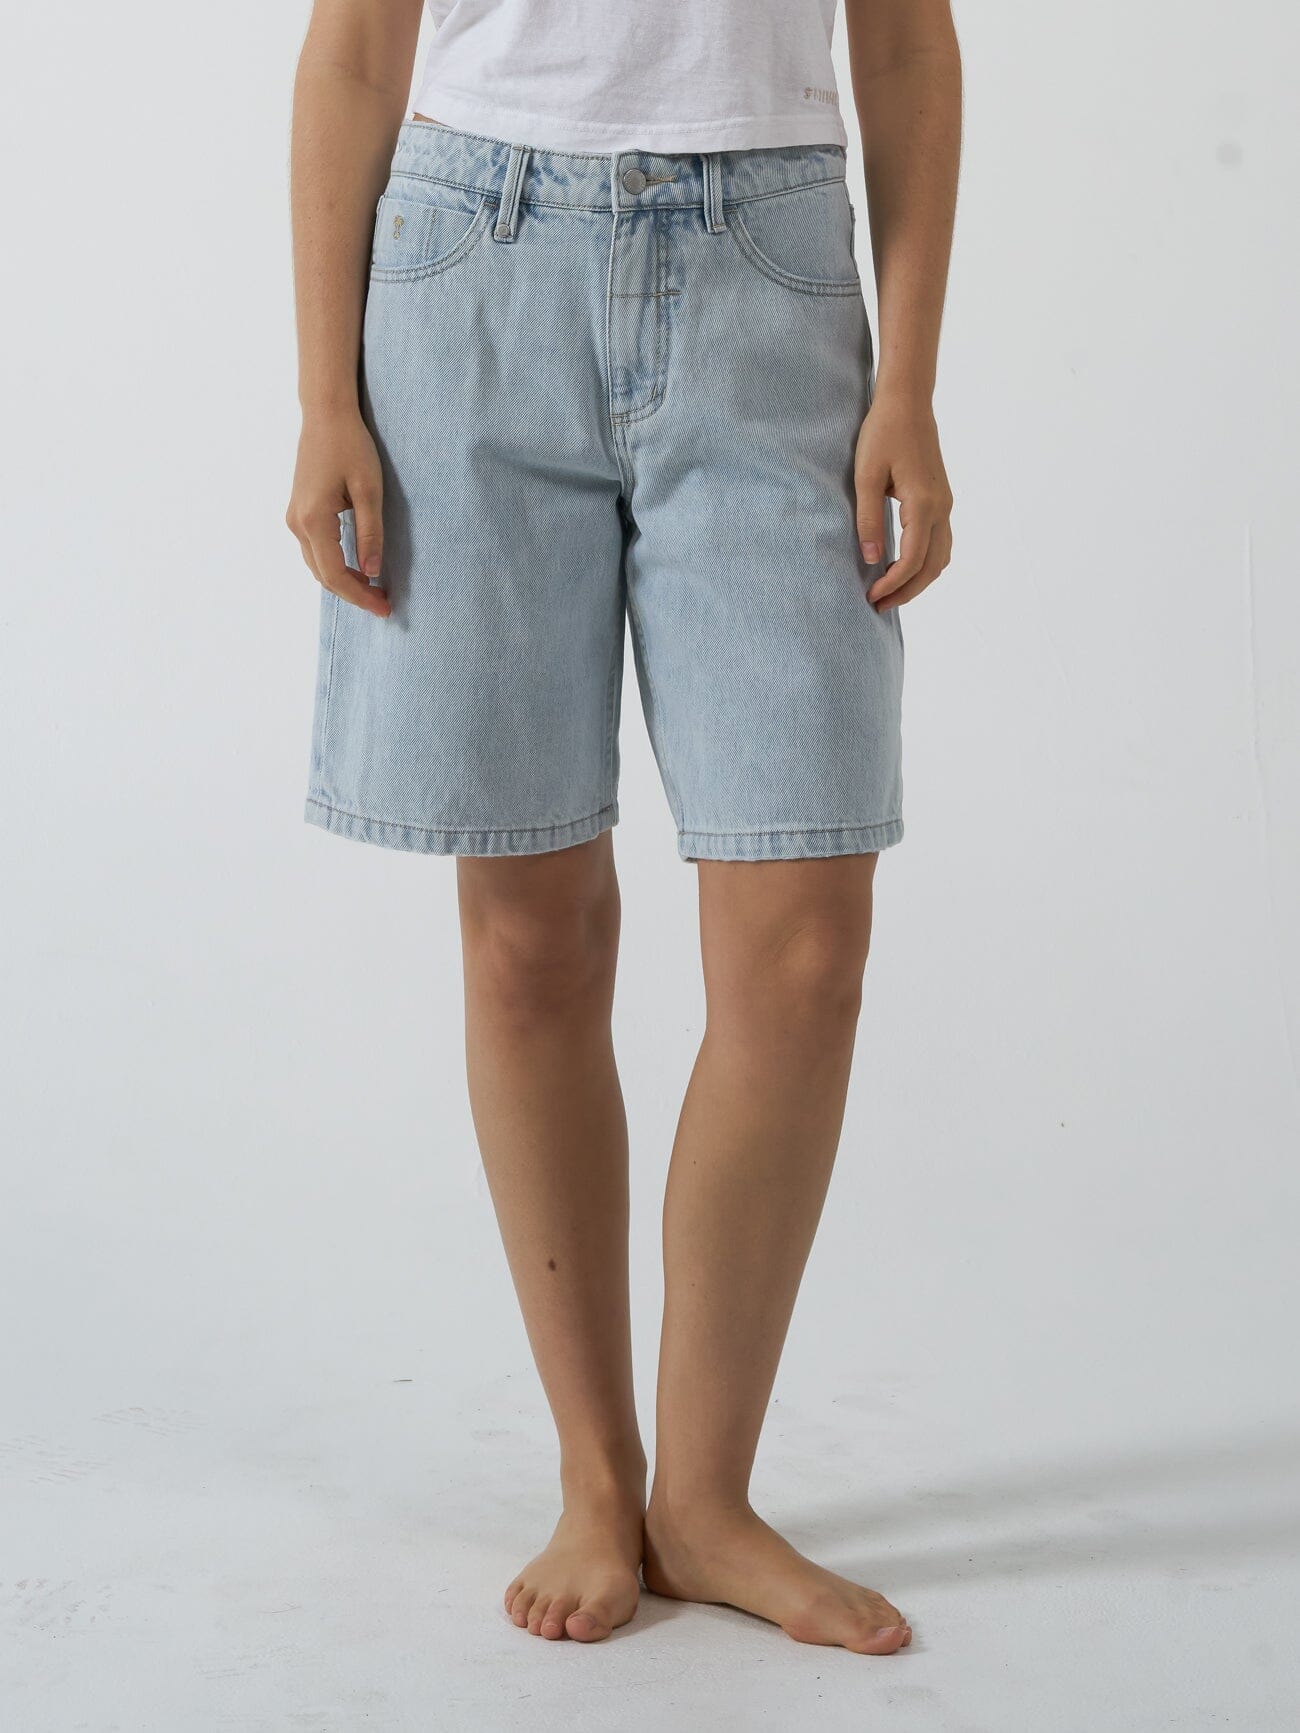 Wangsaura Women Short Pants Slim-Fit Summer Hot Pants Button Sexy Denim  Shorts 